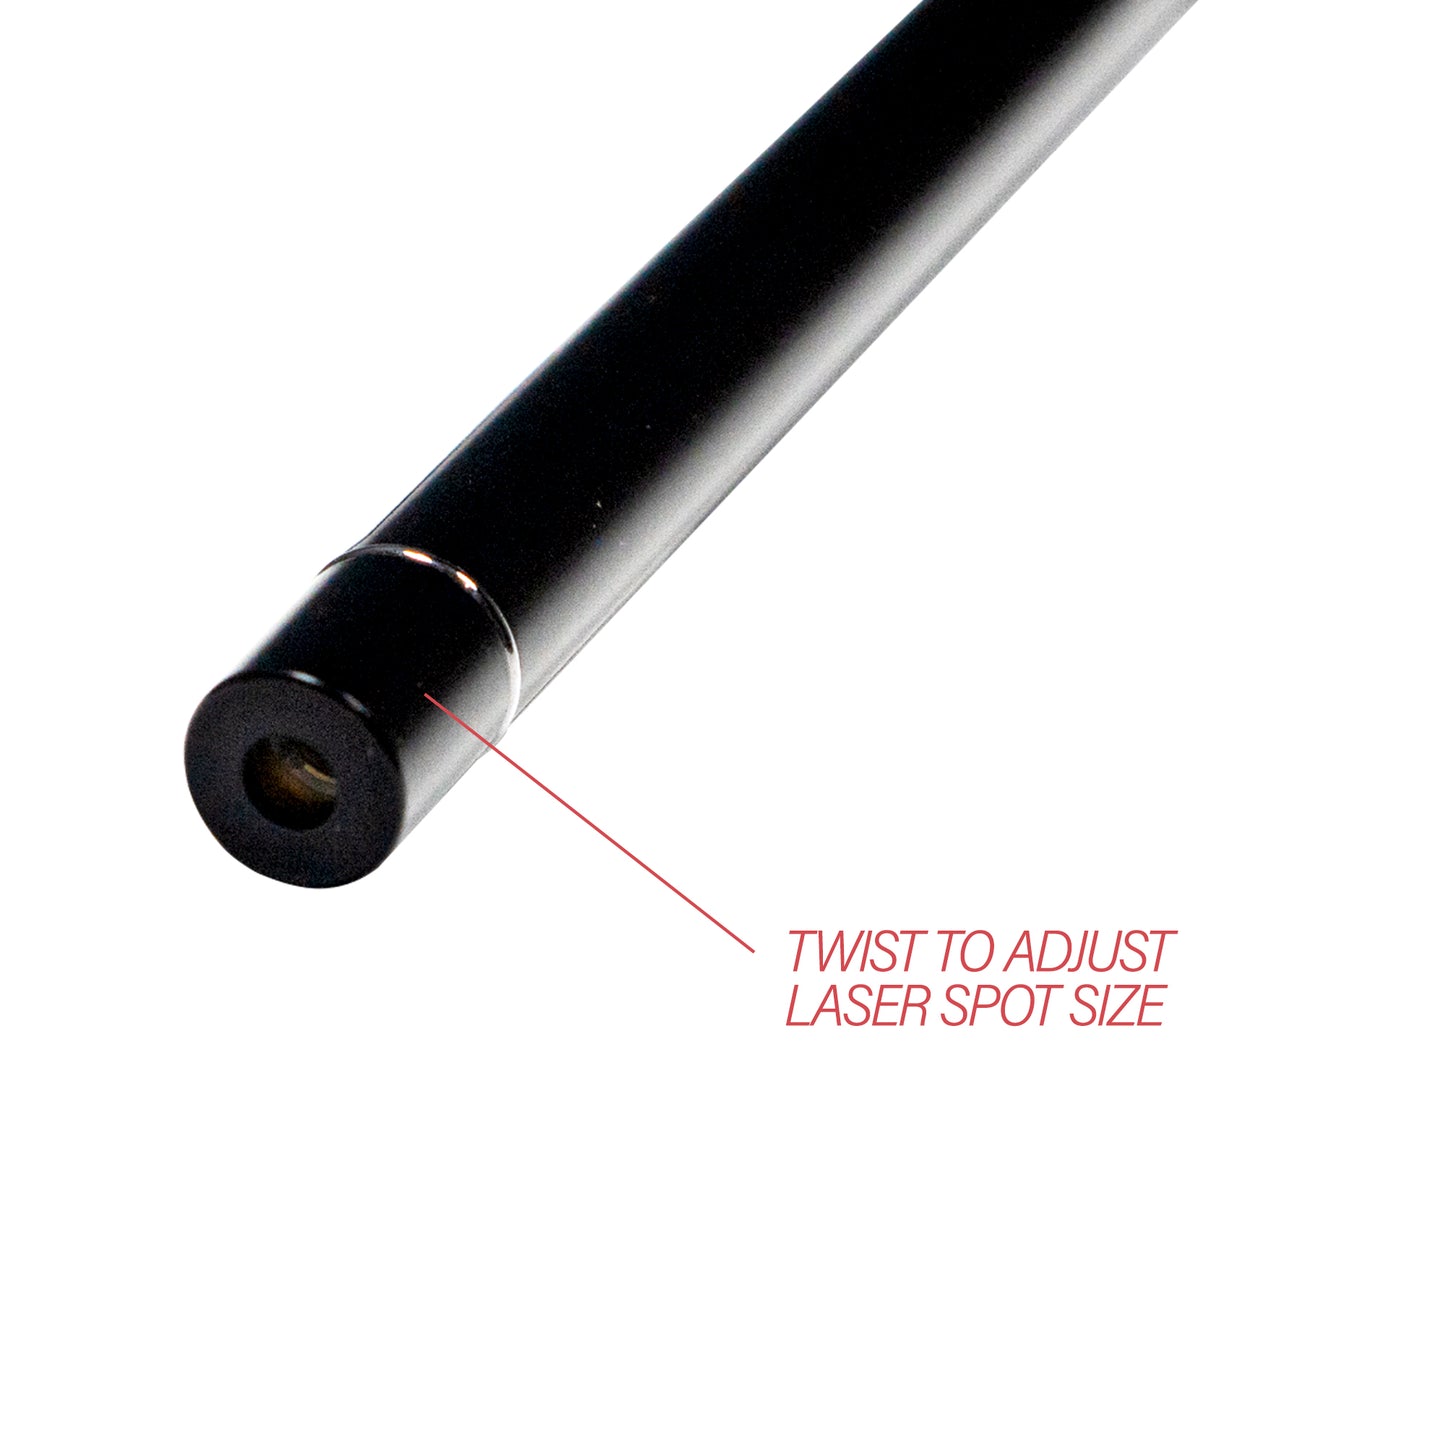 twist adjustable laser spot size acupuncture pen